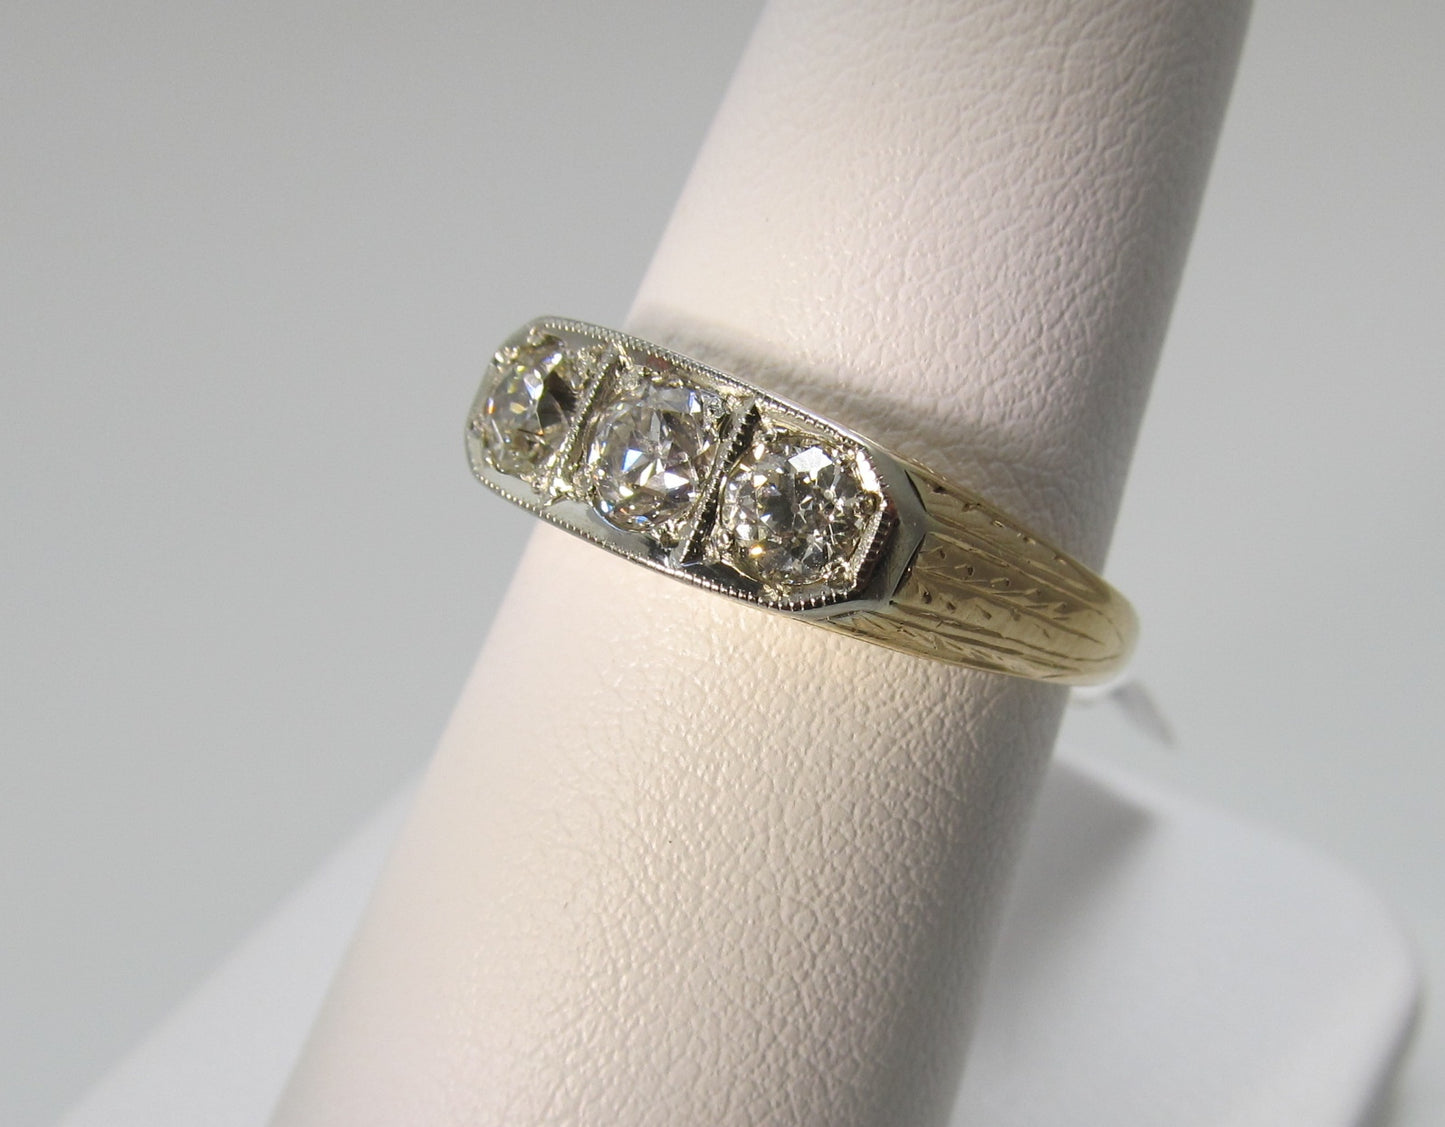 Vintage 3 stone diamond ring, 14k white and yellow gold